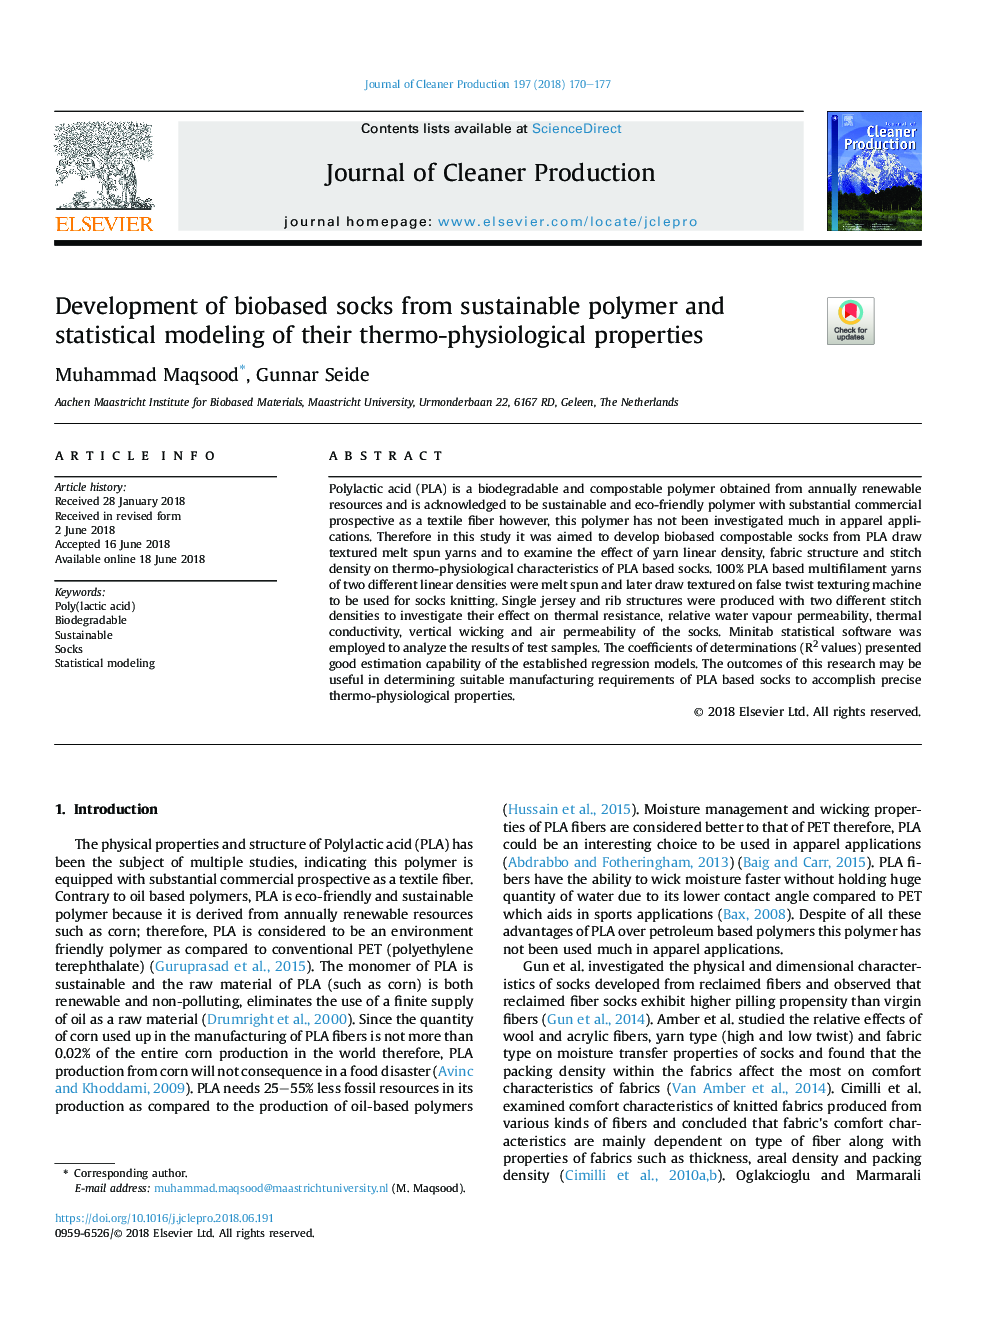 توسعه جوراب های بیولوژیکی از پلیمرهای پایدار و مدل سازی آماری از ویژگی های ترمو فیزیولوژیکی آنها 